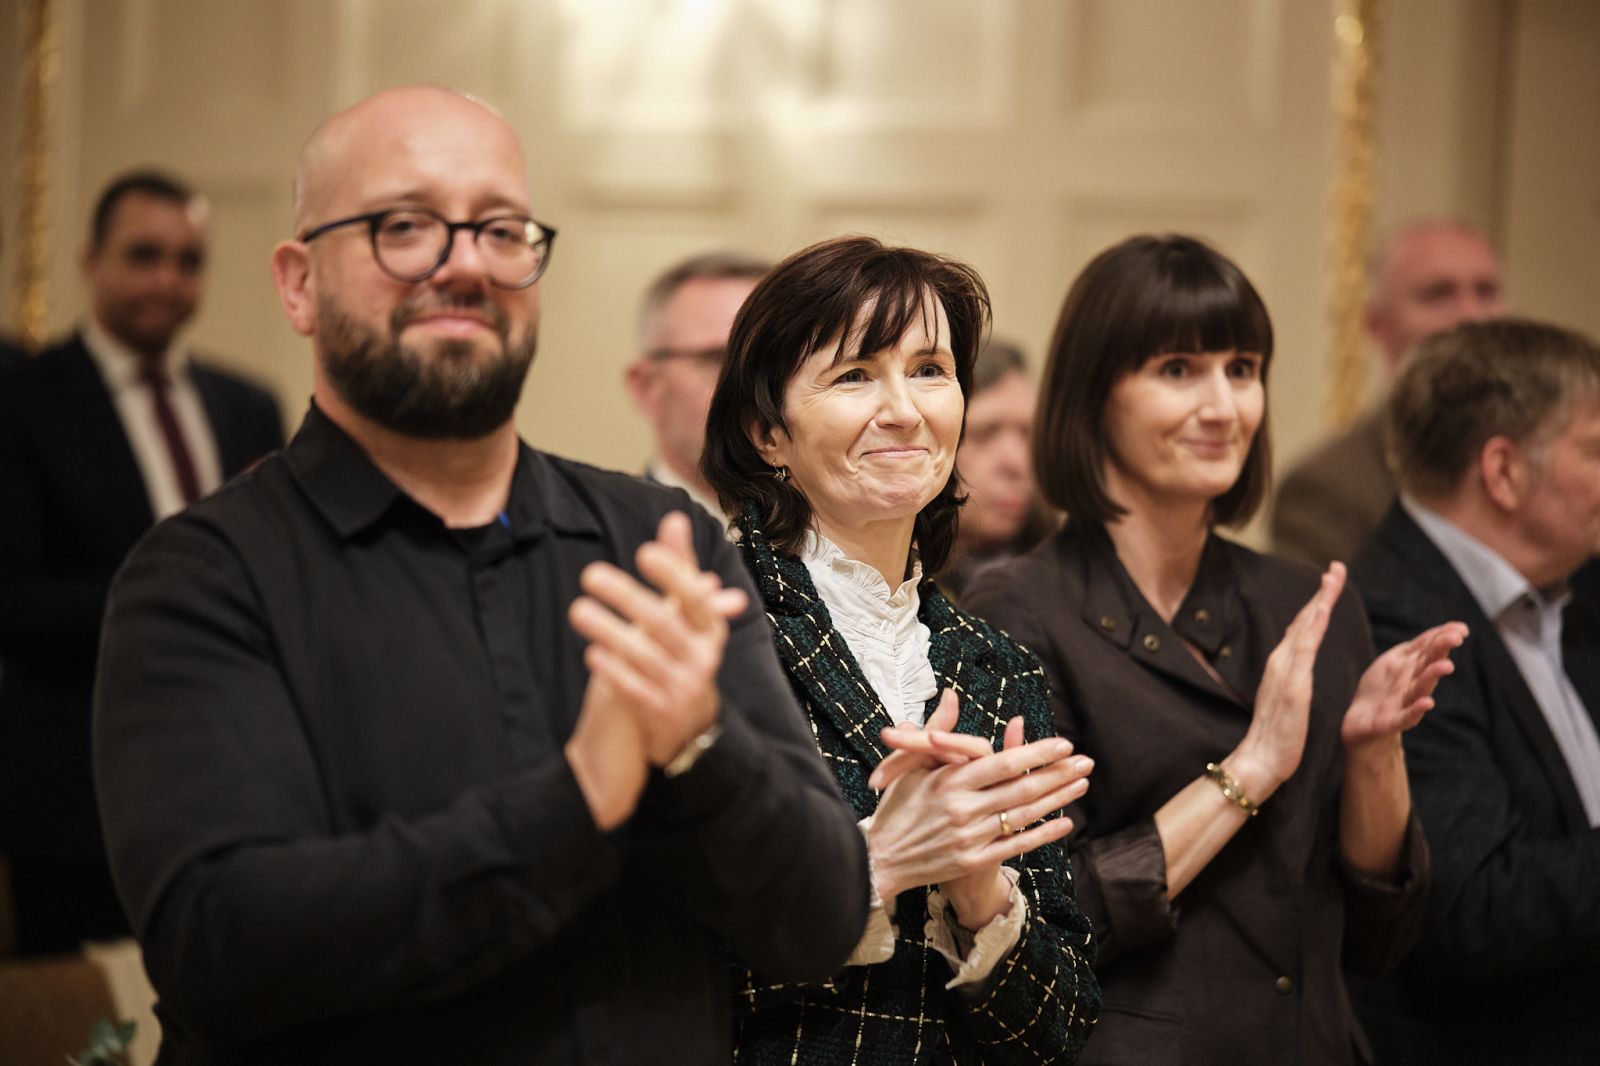 Prof. Marek Osiewicz, prof. Elżbieta Winiecka i mgr Natalia Czerwińska stoją w auli uniwersyteckiej i klaszczą, mają szerokie uśmiechy na twarzach.